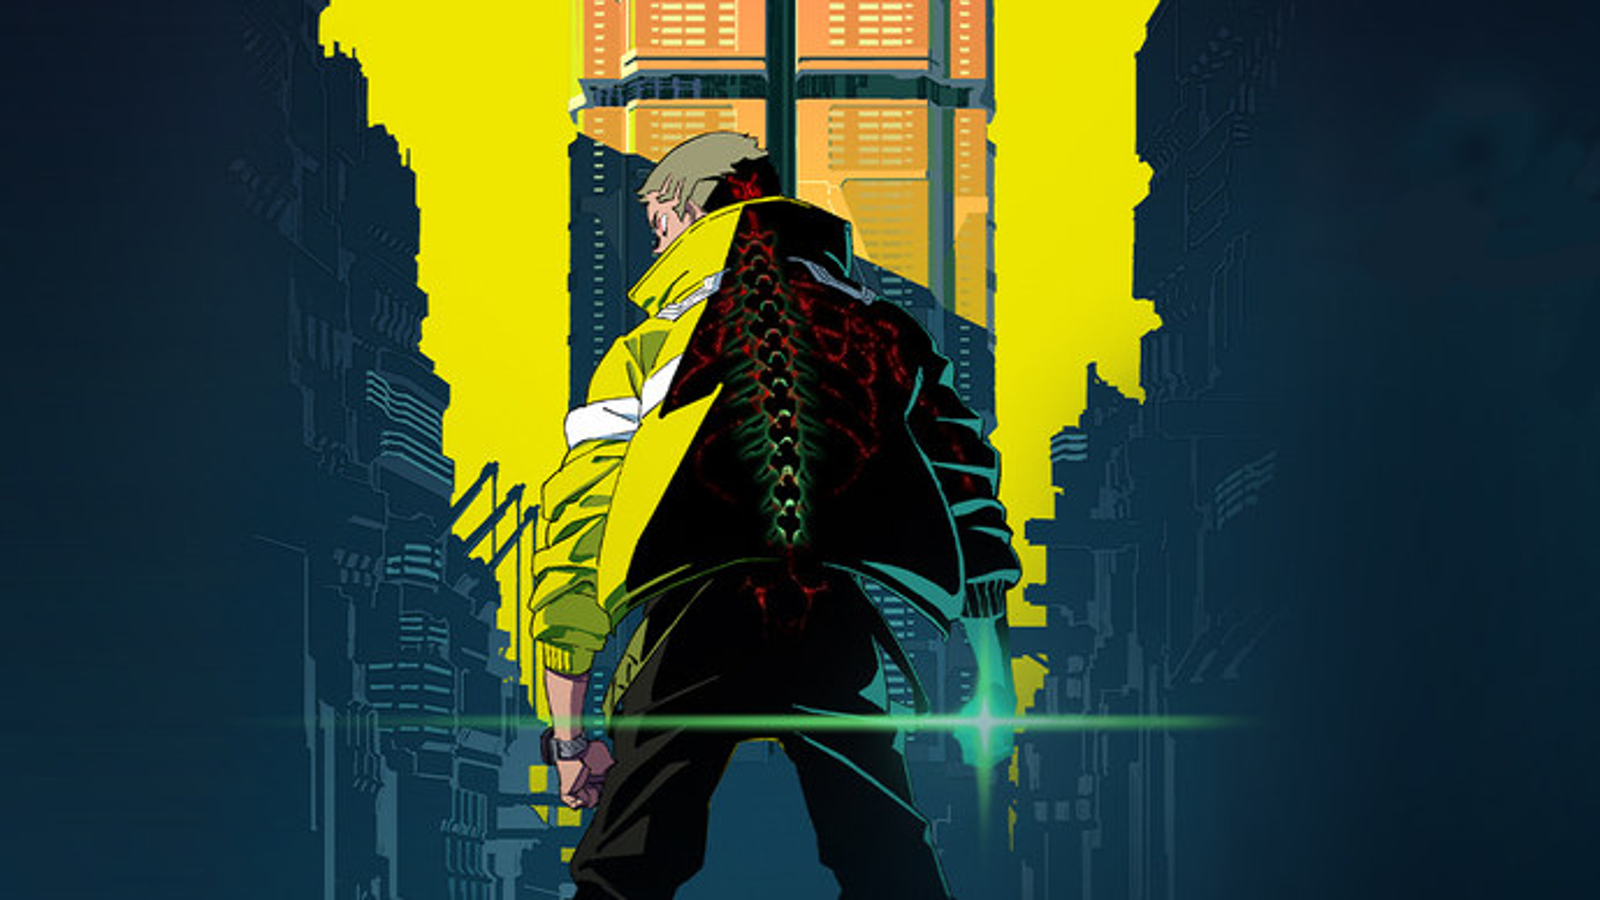 Cyberpunk: Edgerunners - Official Anime Announcement 